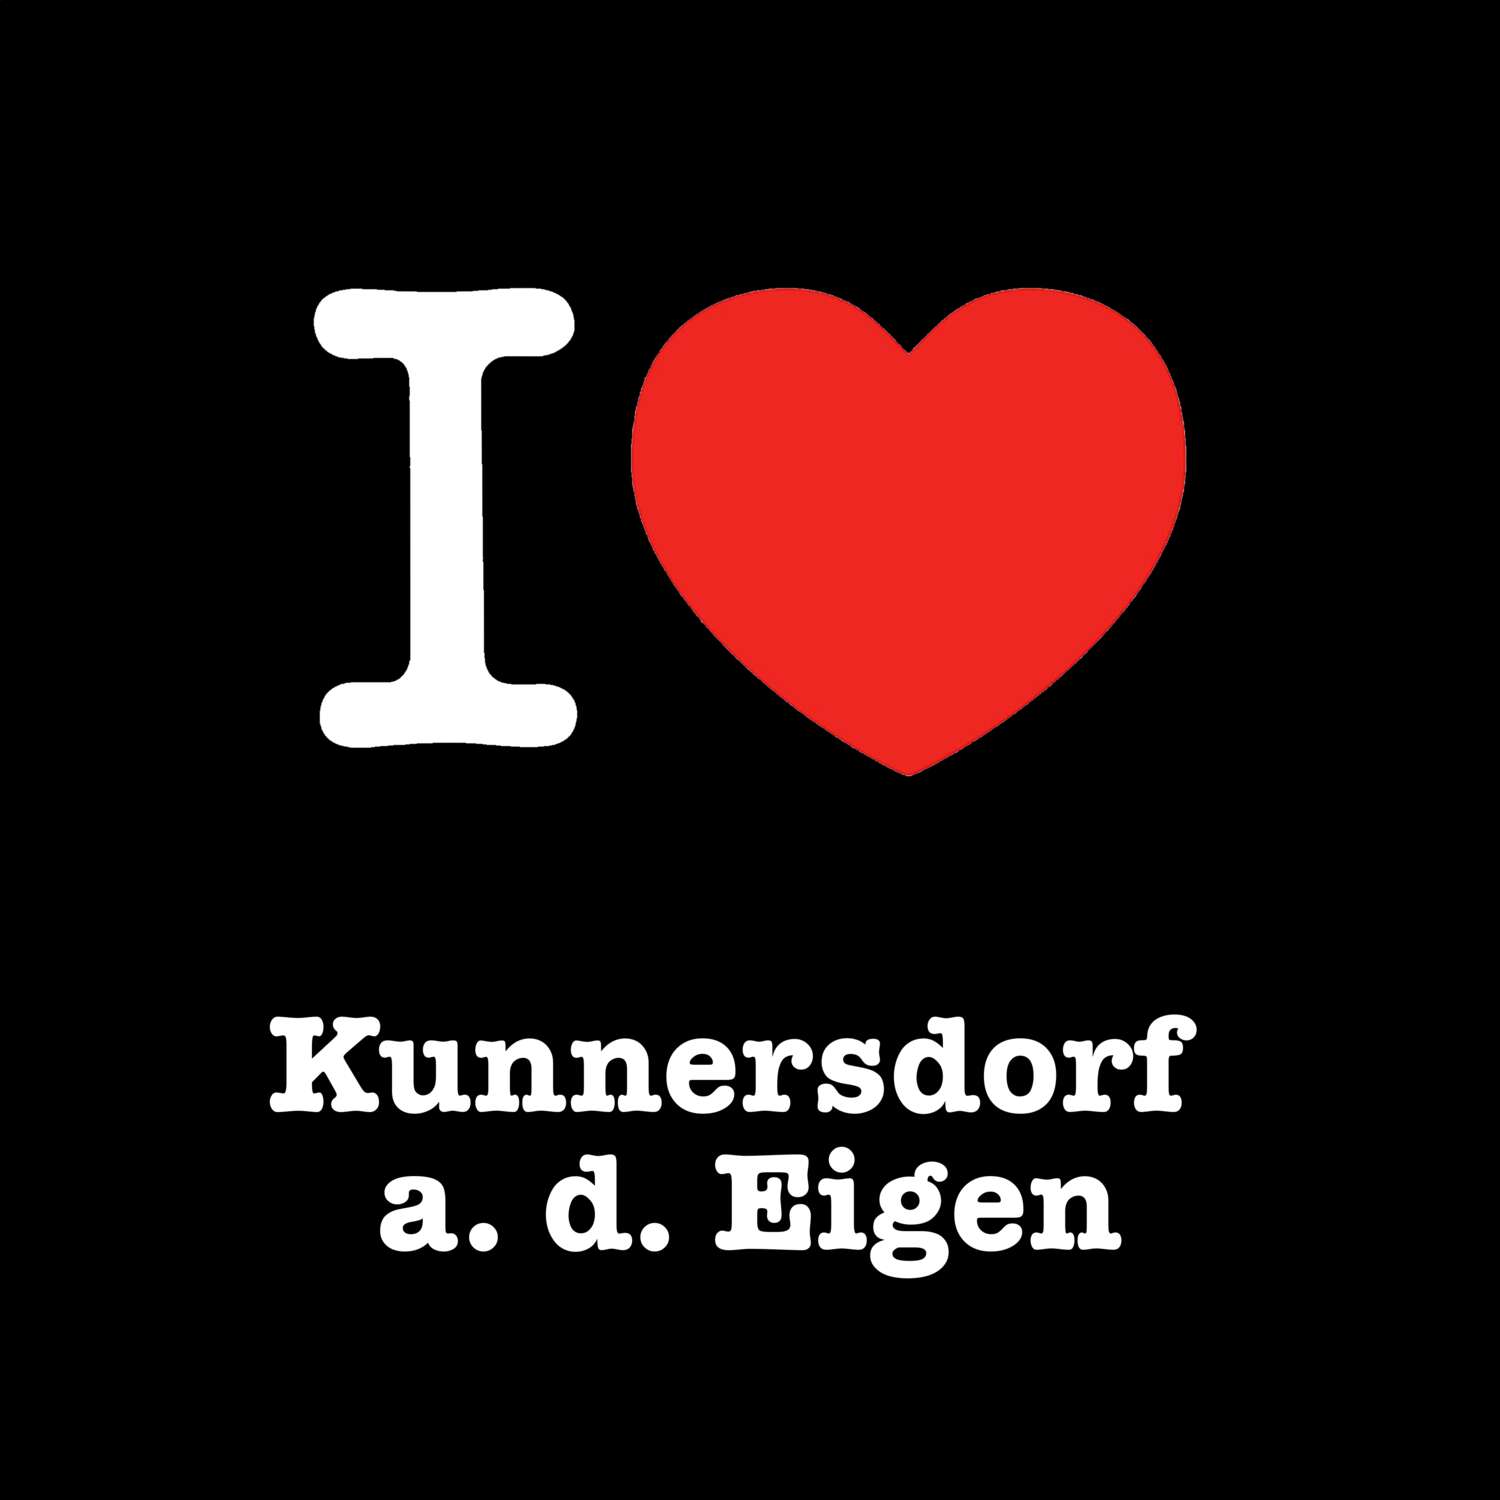 Kunnersdorf a. d. Eigen T-Shirt »I love«